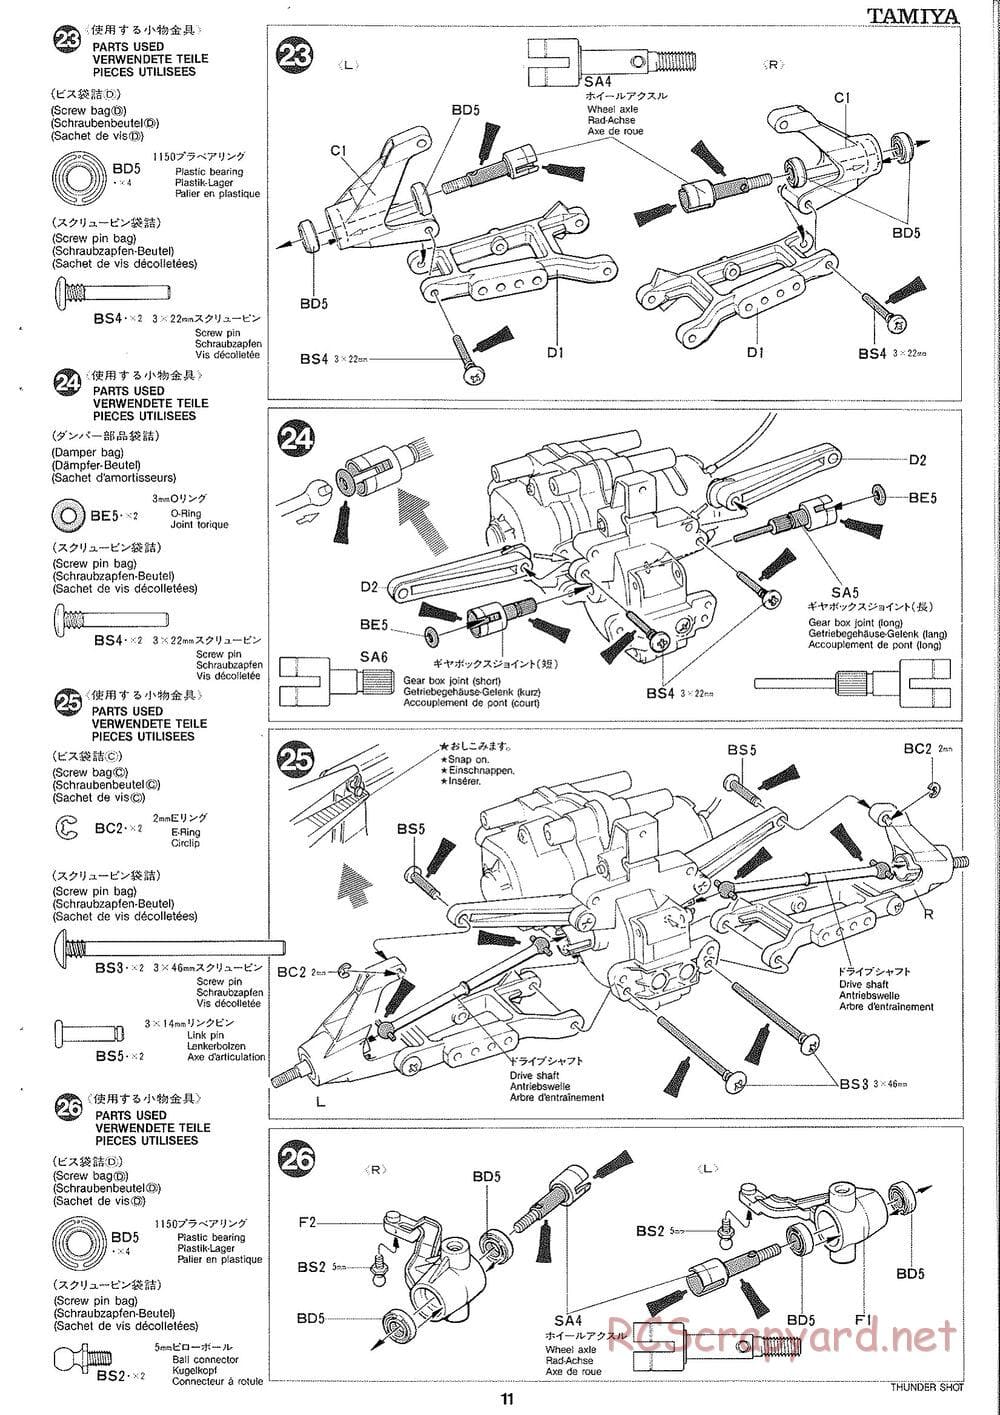 Tamiya - Thunder Shot - TS1 Chassis - Manual - Page 12